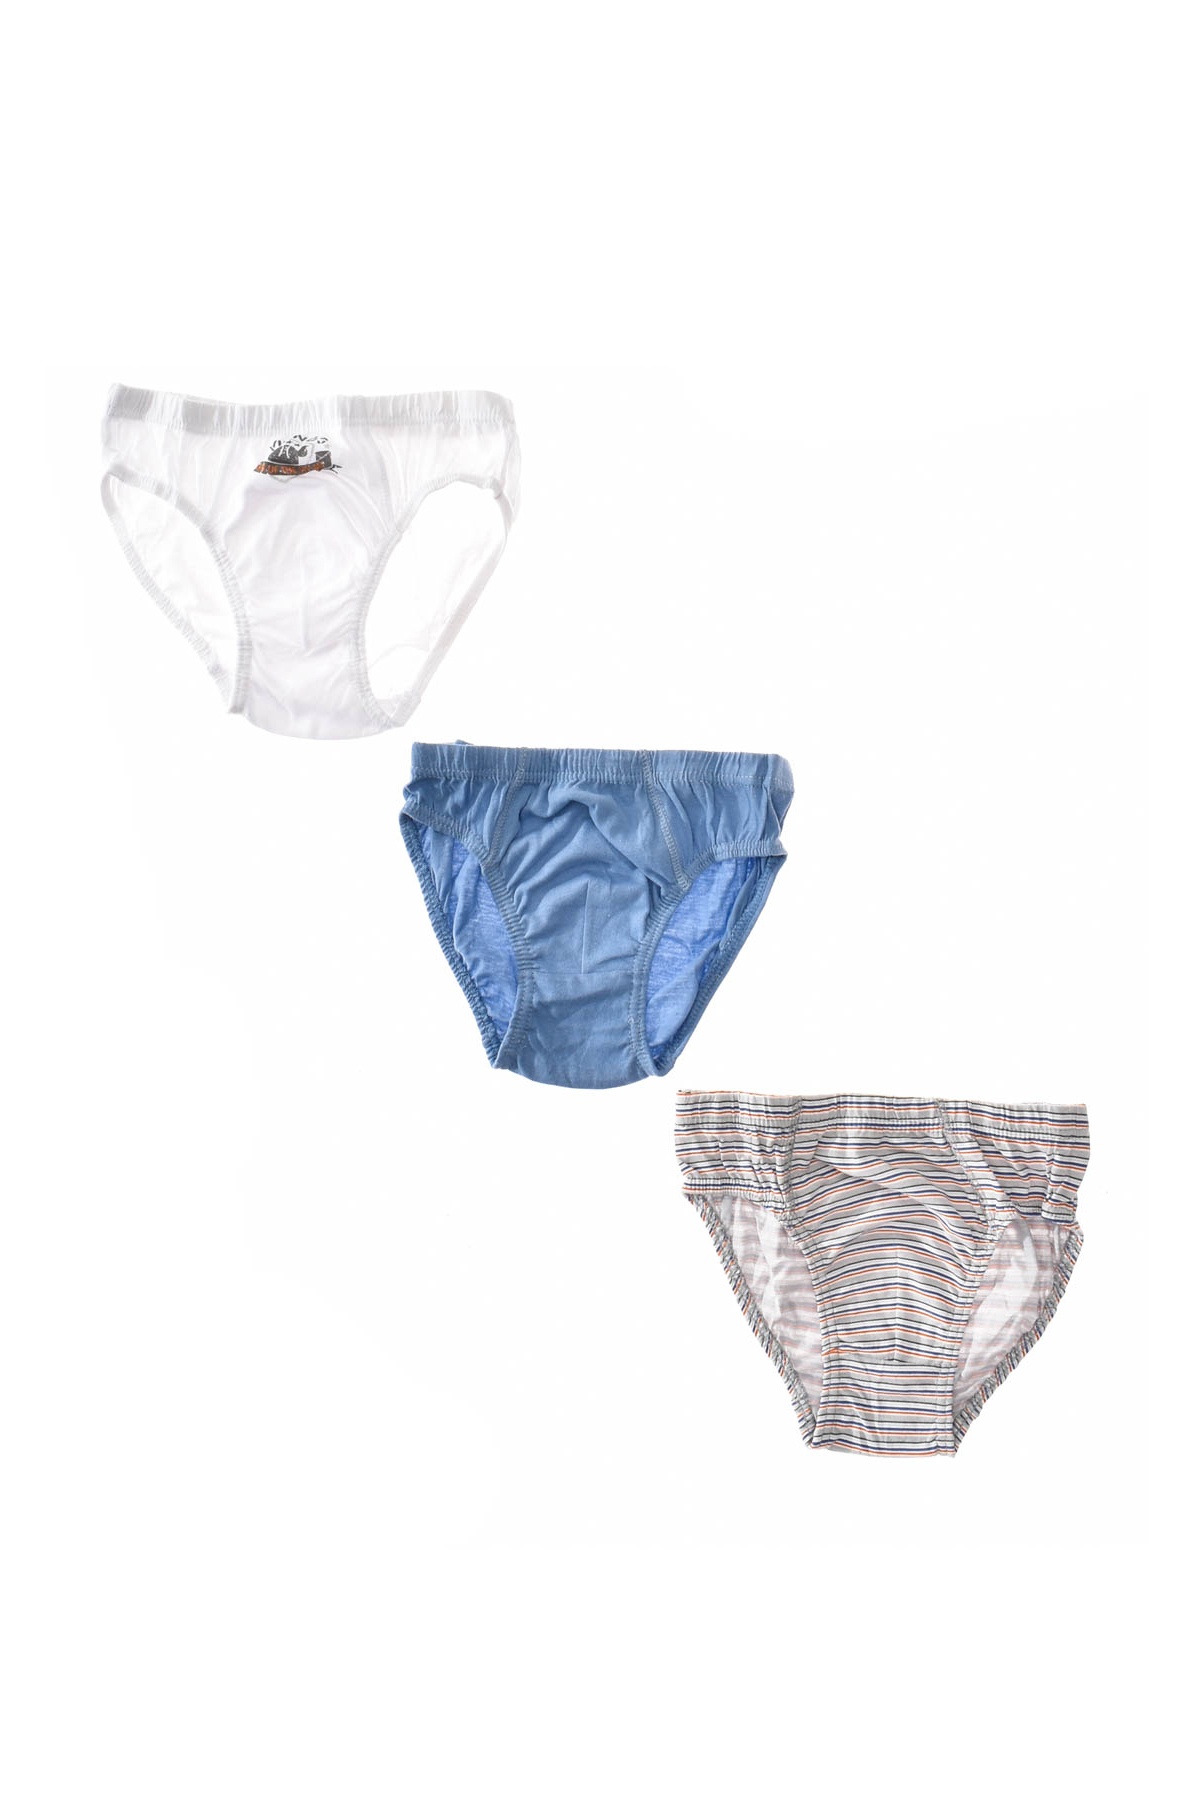 Briefs Underwear for Boy  3 pcs.- Yo! - 1